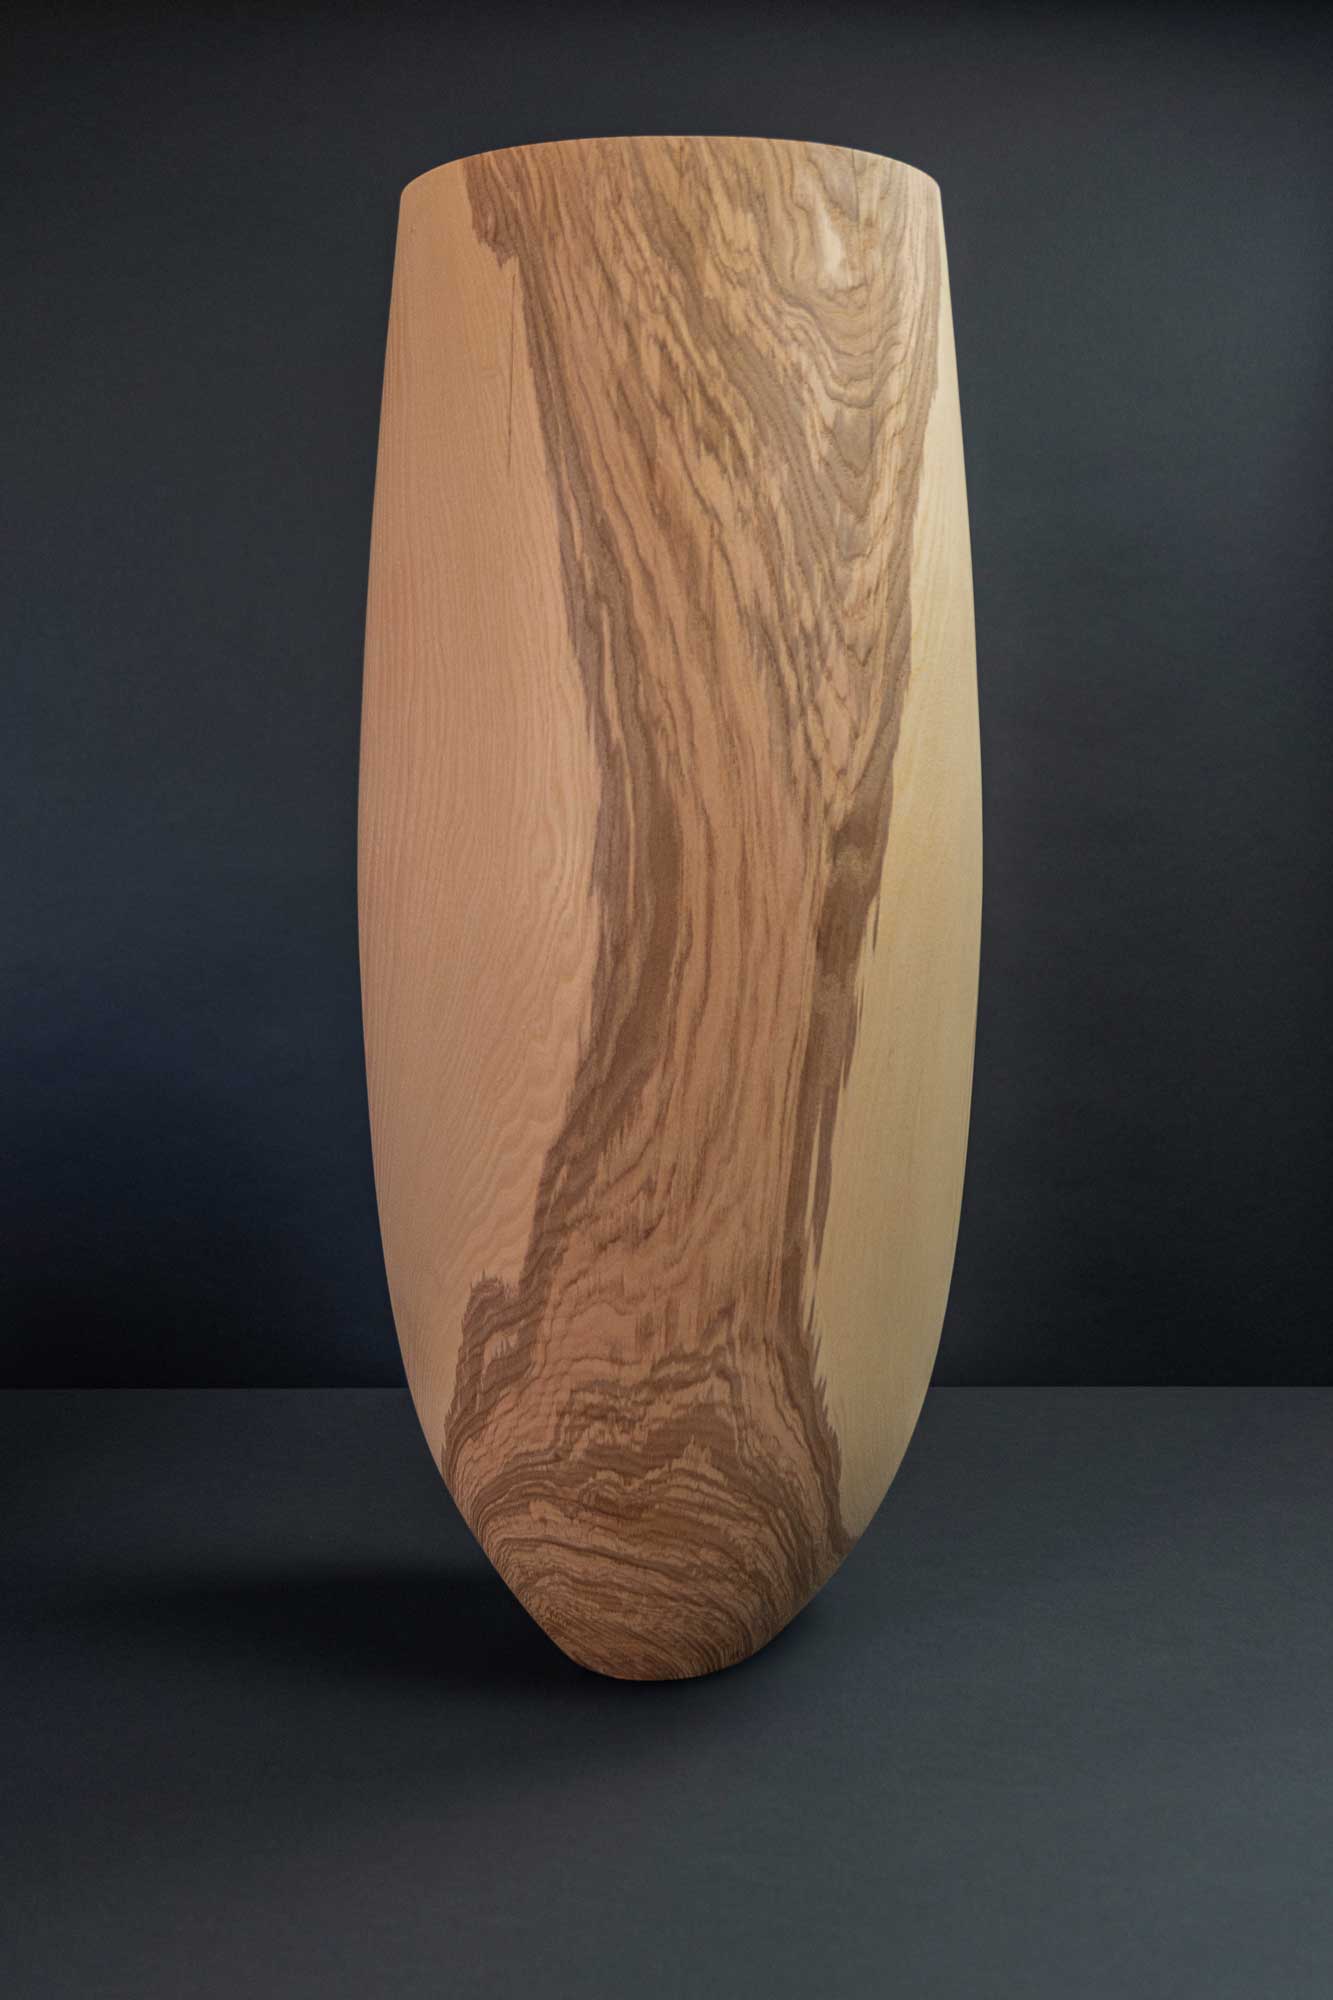 Das Bild zeigt eine große längliche Vase aus Holz vor dunklem Hintergrund.